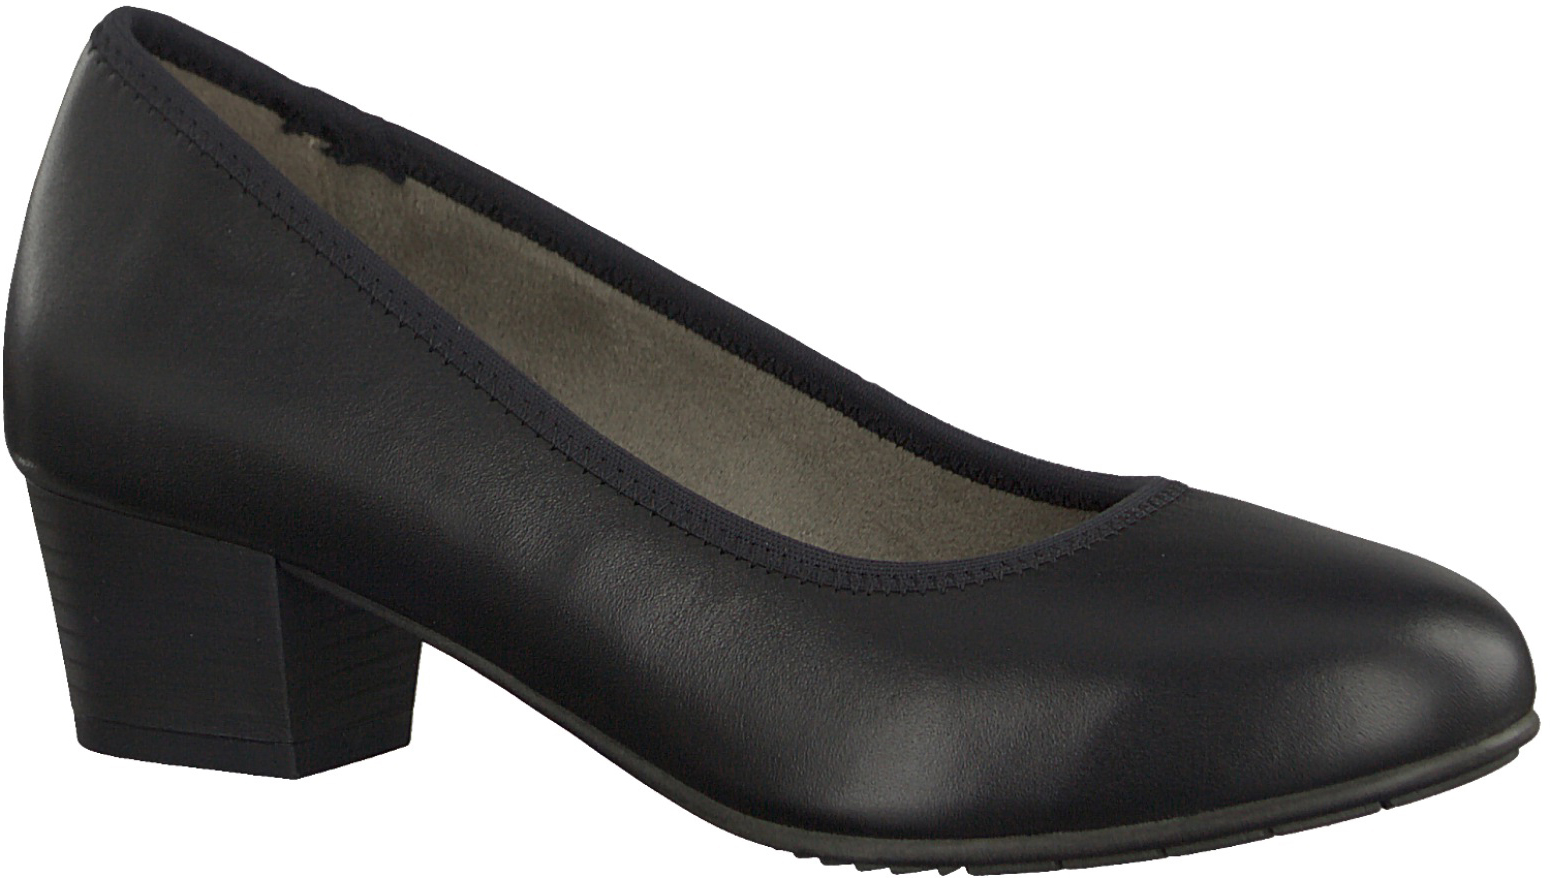 Туфли женские Jana, цвет: черный. 8-8-22303-20-022/220. Размер 36